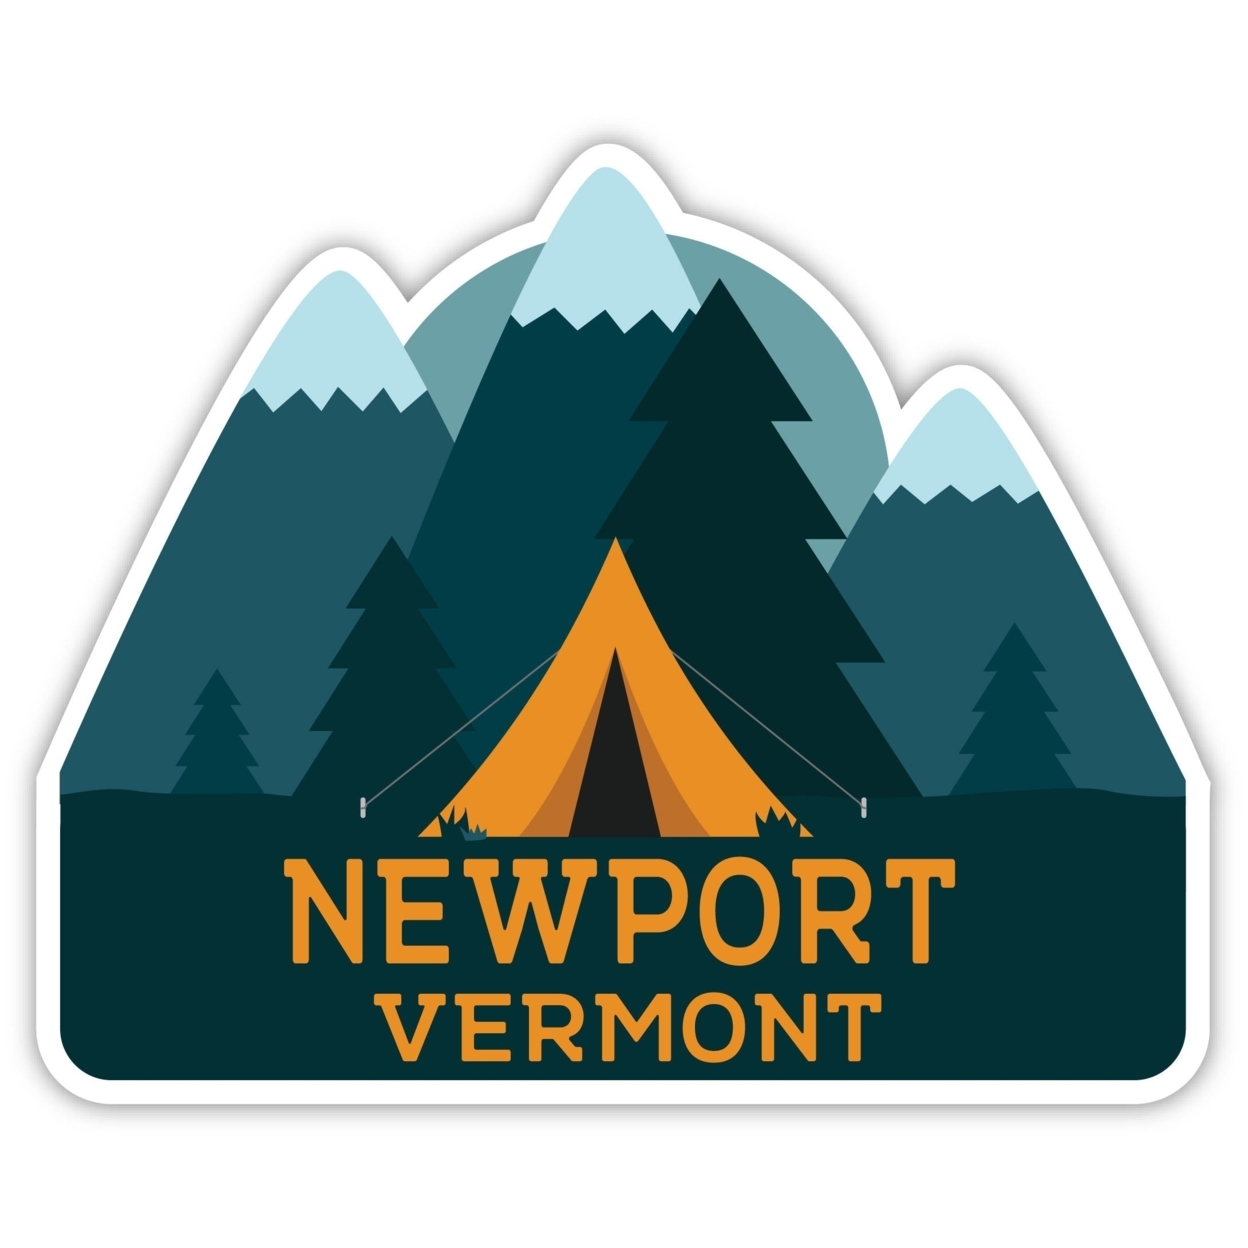 Newport Vermont Souvenir Decorative Stickers (Choose Theme And Size) - Single Unit, 4-Inch, Tent